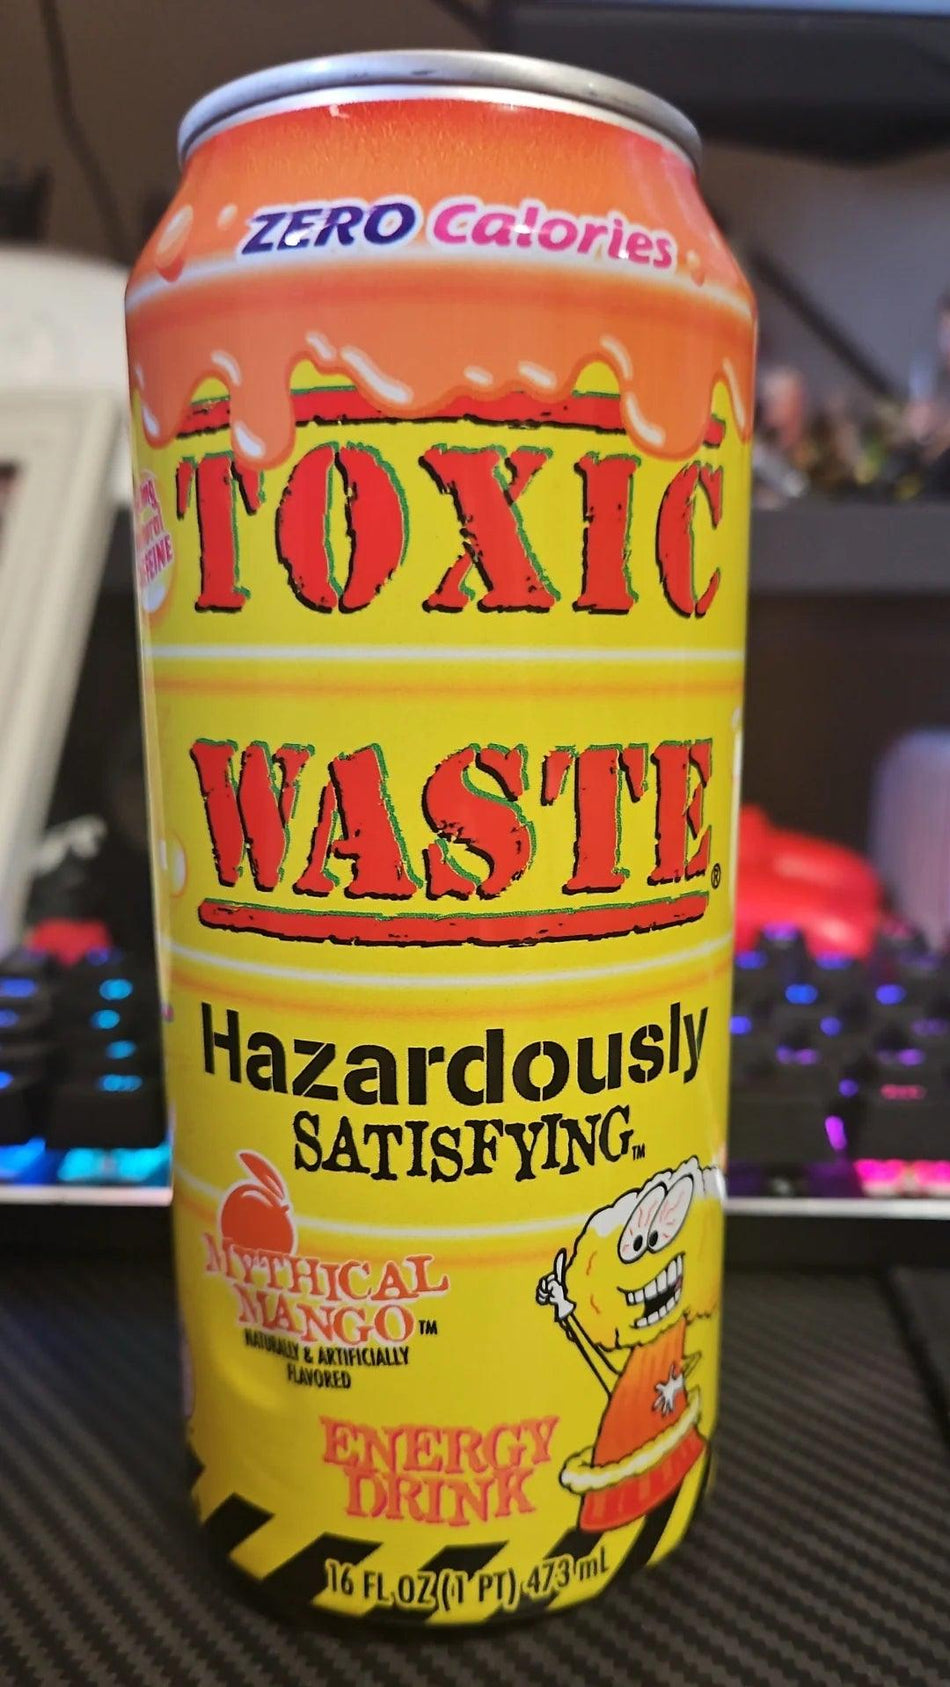 Toxic Waste Energy Drink Mythical Mango - FragFuel